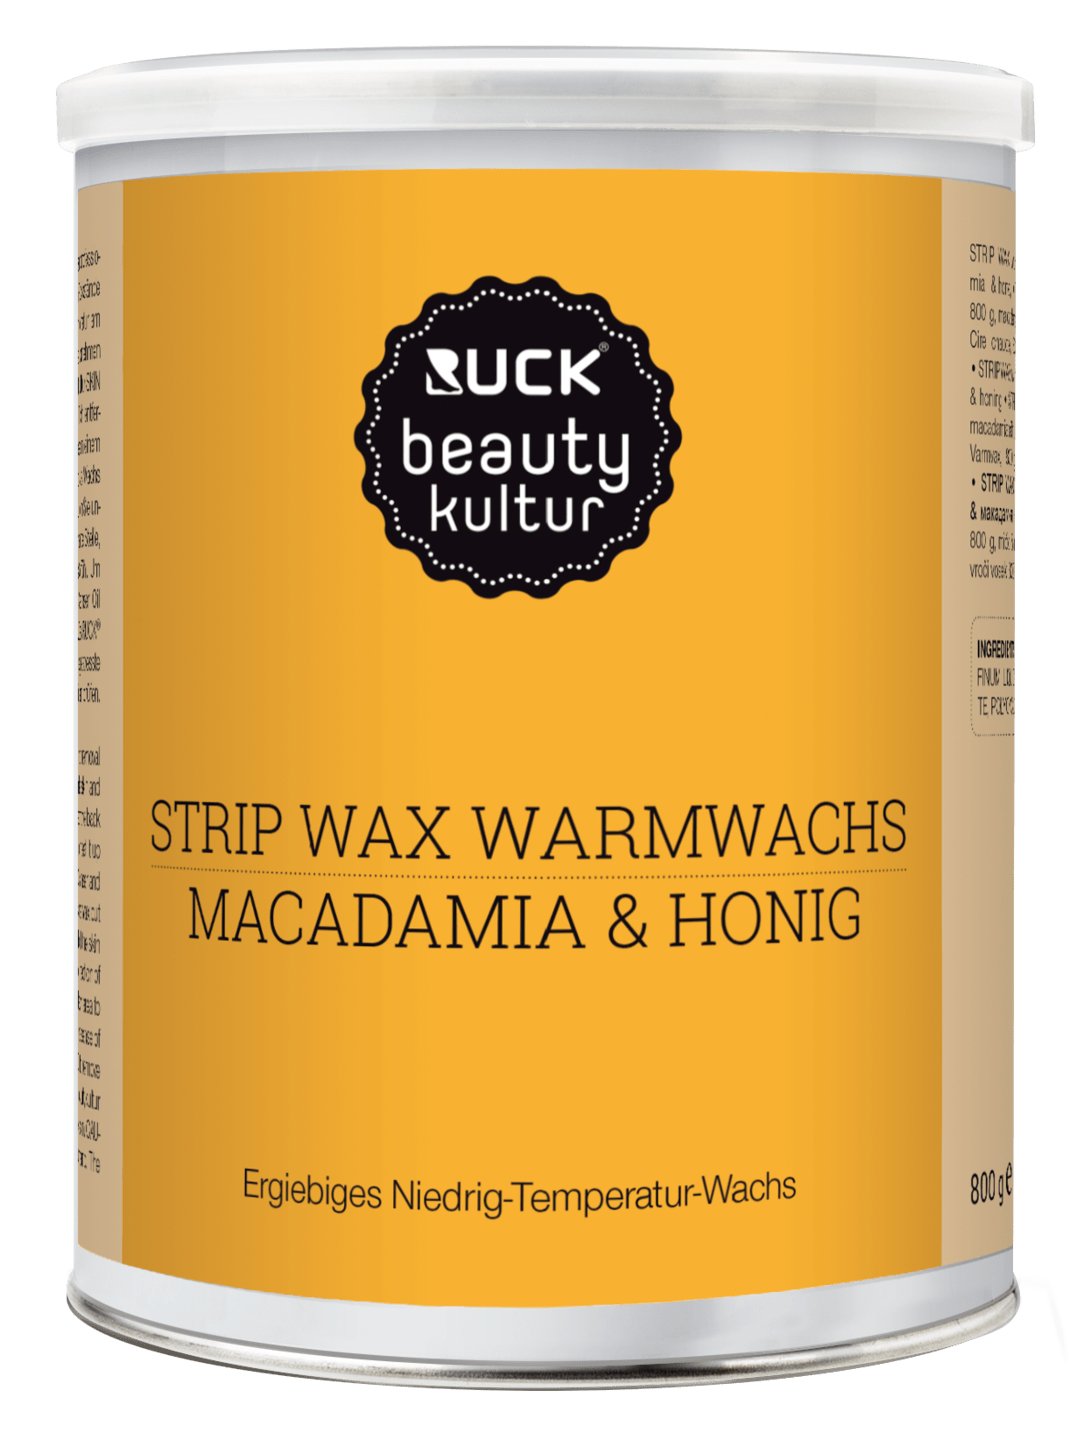 RUCK beautykultur - STRIP WAX Warmwachs, 800 g in orange